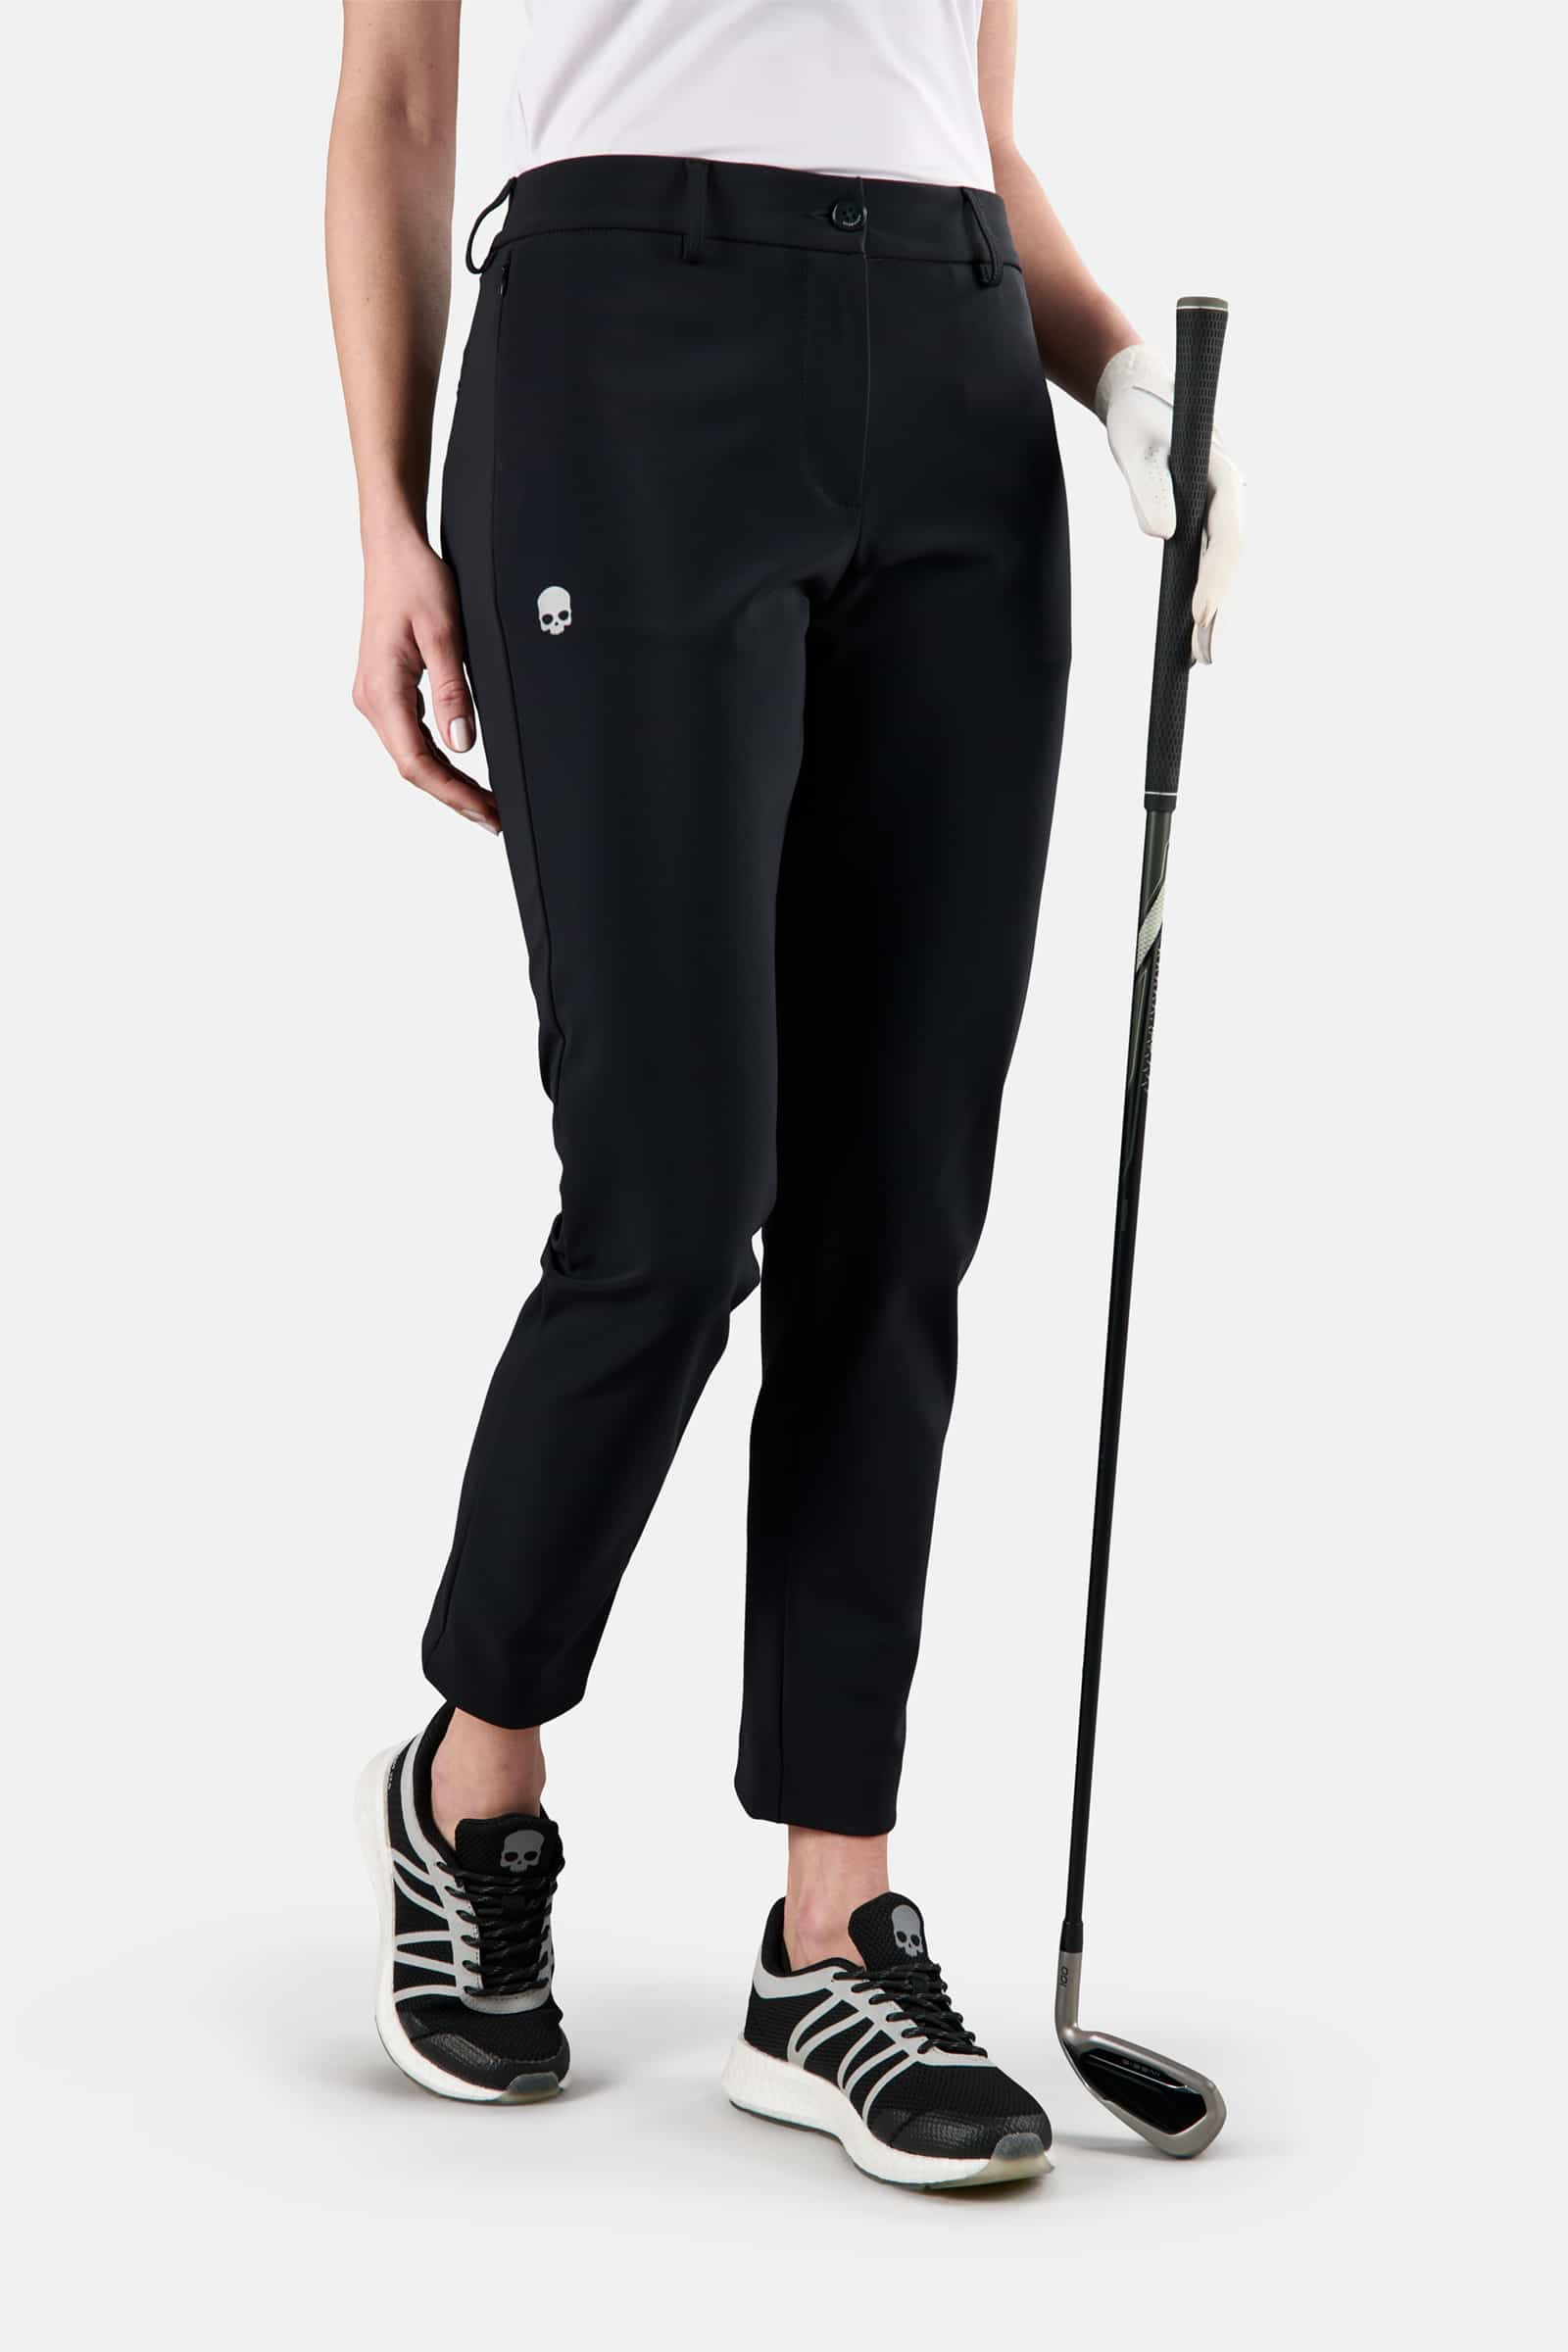 WINTER GOLF TECH PANTS - BLACK - Hydrogen - Luxury Sportwear